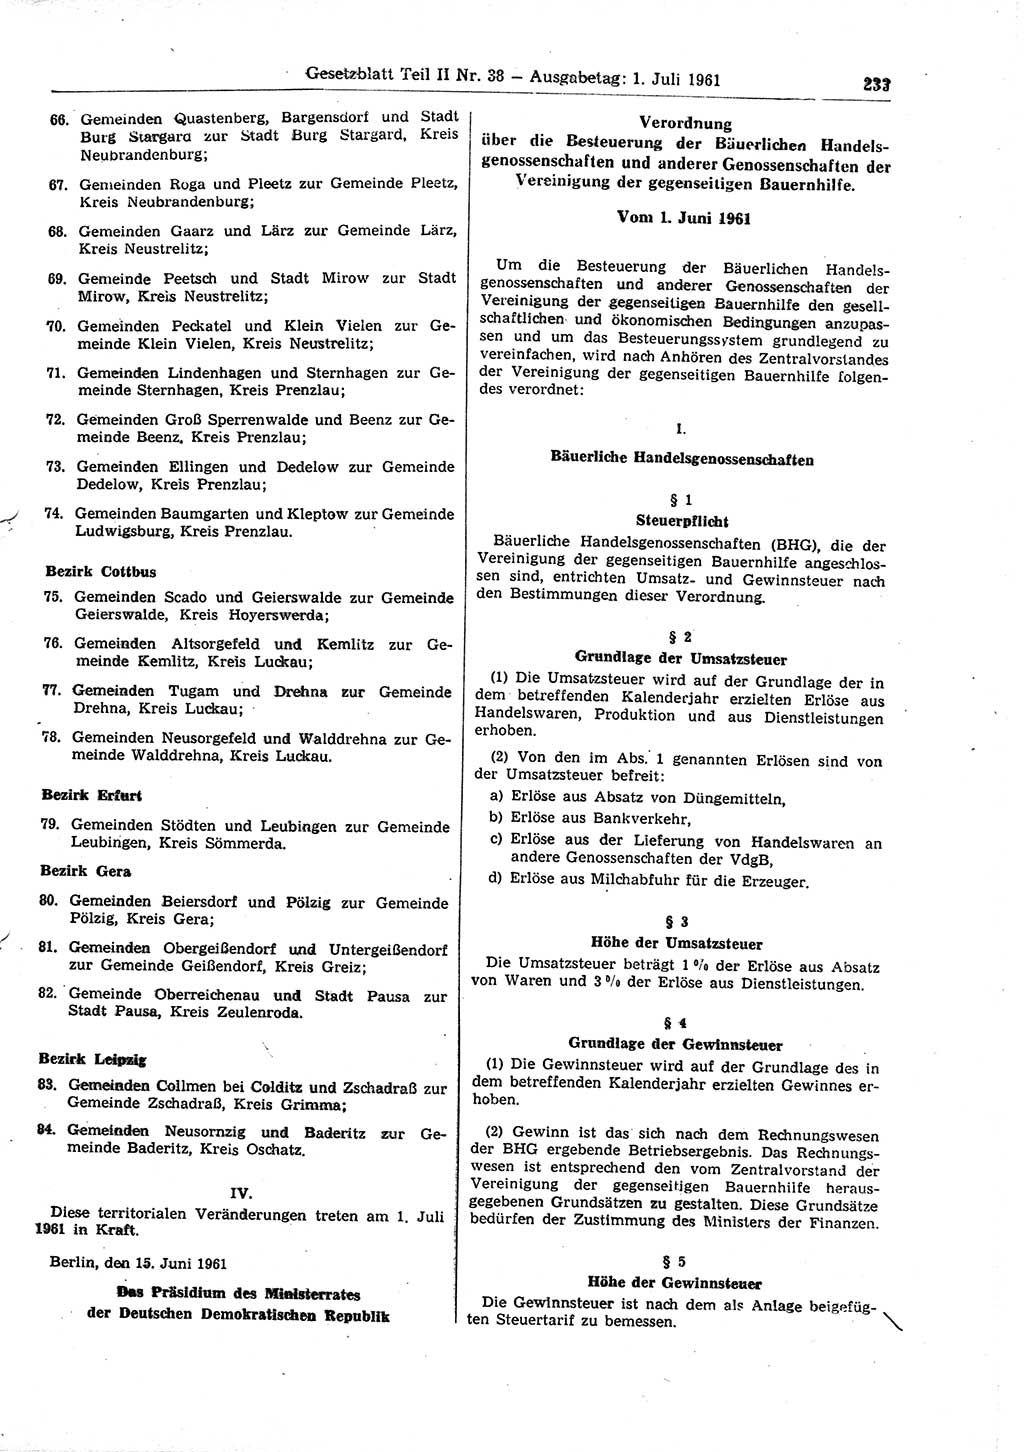 Gesetzblatt (GBl.) der Deutschen Demokratischen Republik (DDR) Teil ⅠⅠ 1961, Seite 233 (GBl. DDR ⅠⅠ 1961, S. 233)